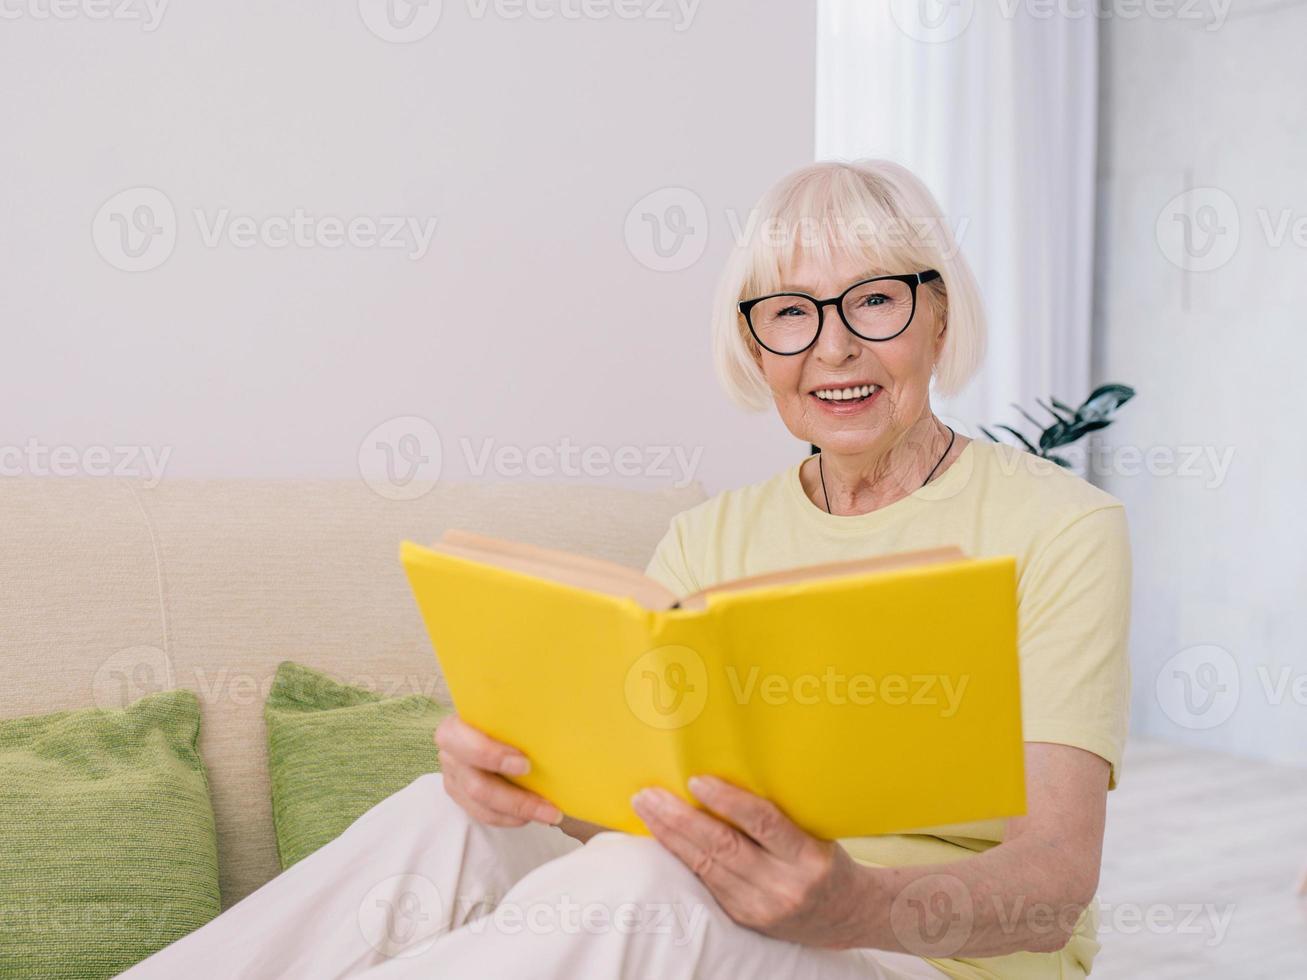 mujer mayor con canas leyendo un libro en un sofá en casa. educación, pensión, anti edad, concepto de lectura foto